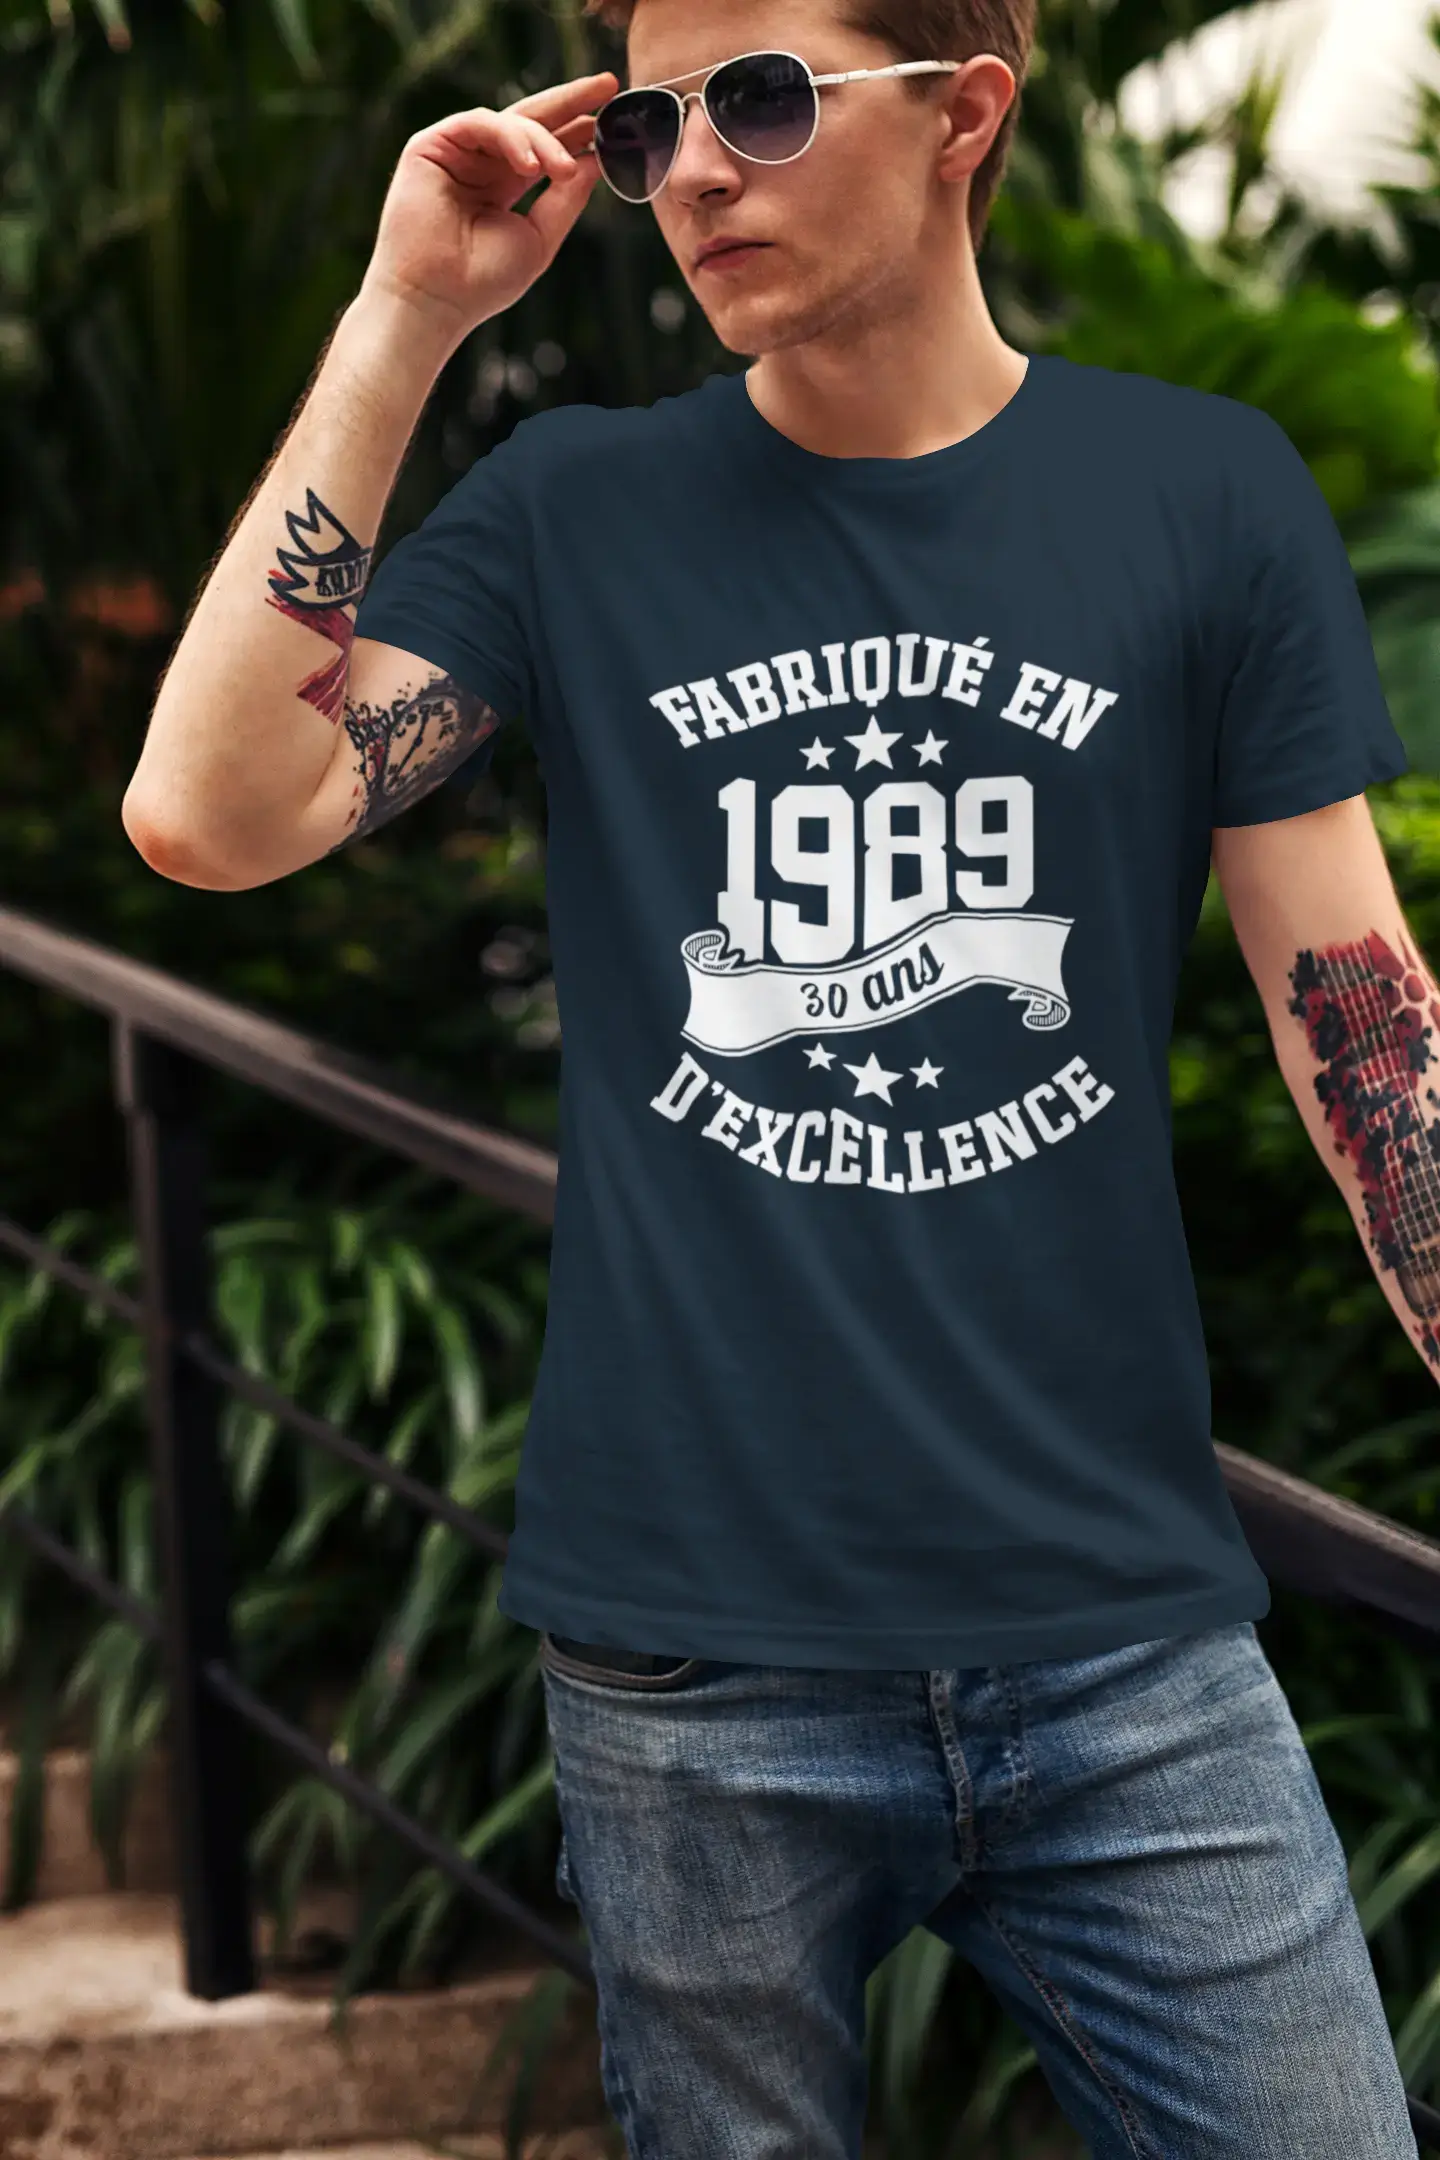 ULTRABASIC - Fabriqué en 1989, 30 Ans d'être Génial Unisex T-Shirt Royal